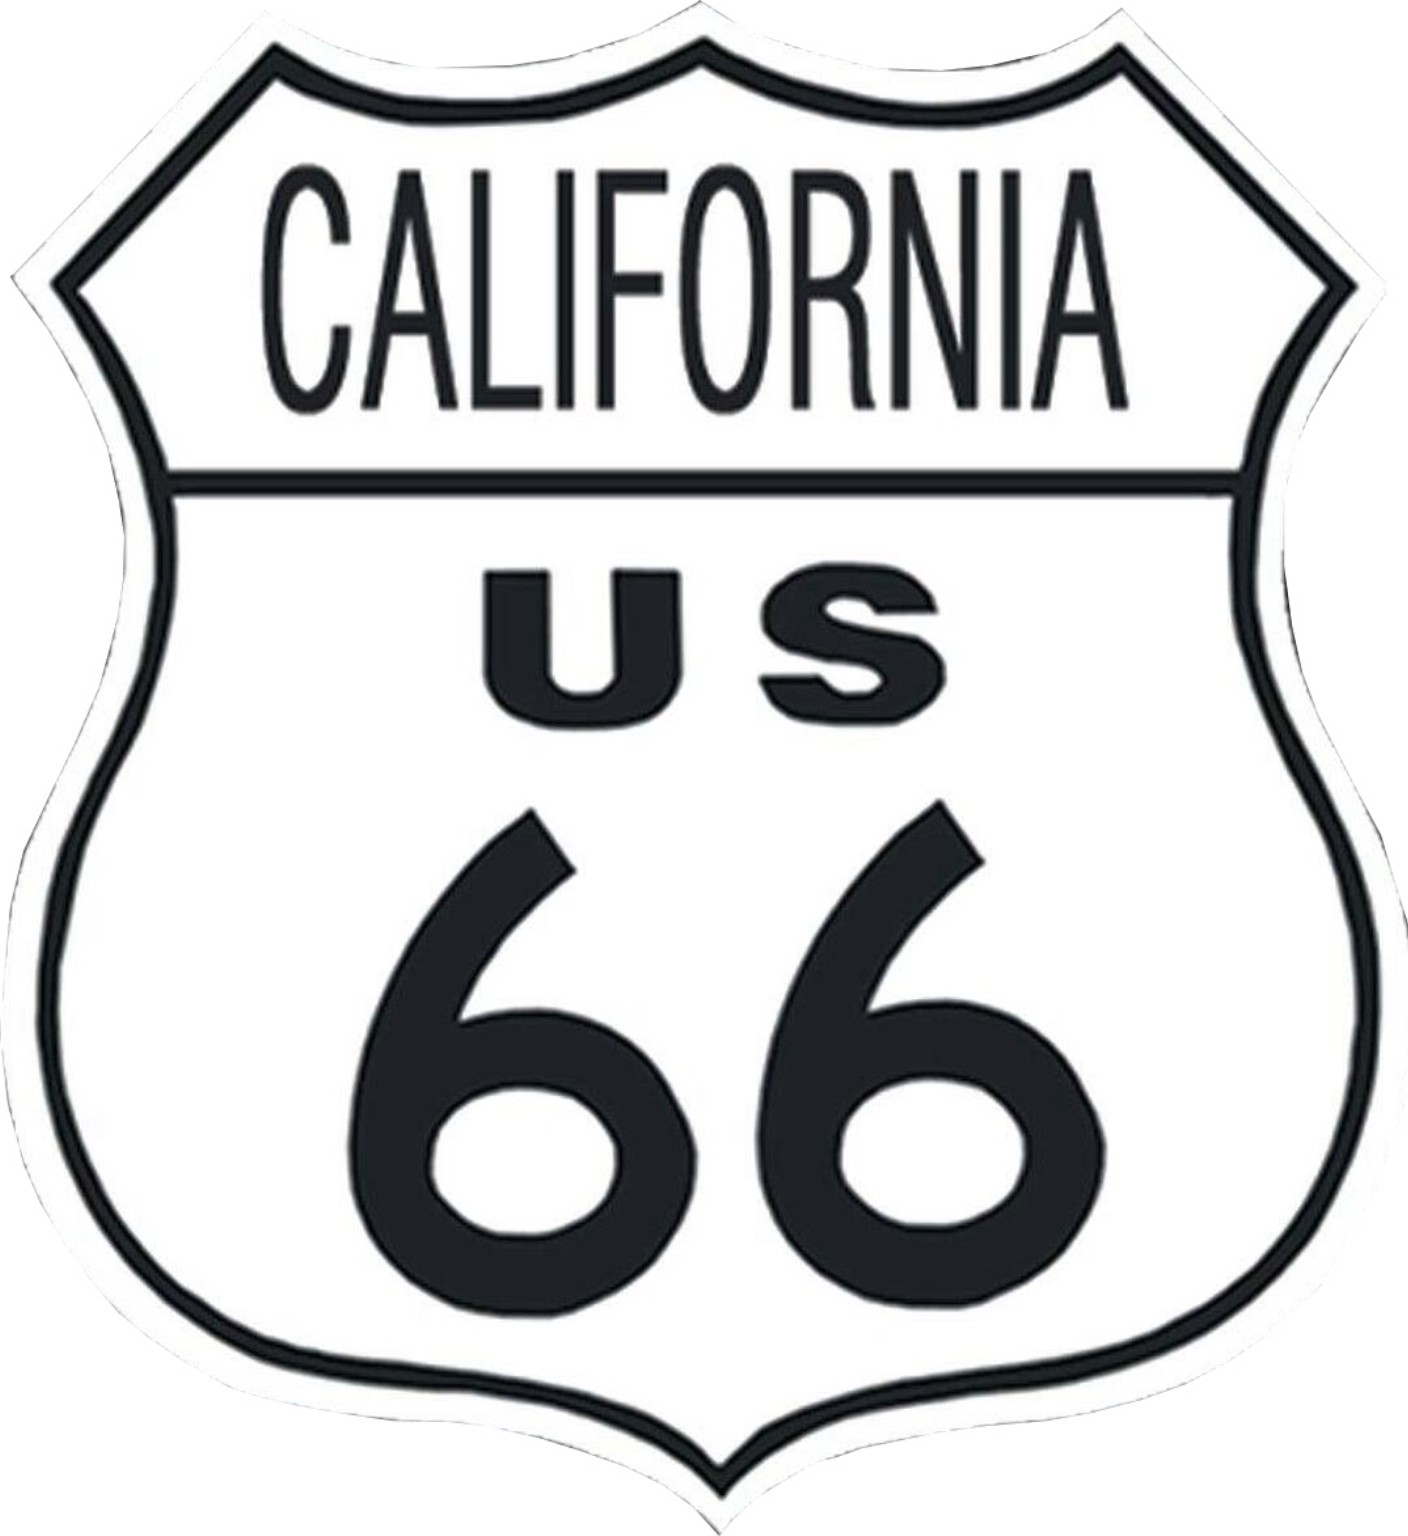 Bouclier Highway métallique 28 x 28 cm Etat de Californie Route 66